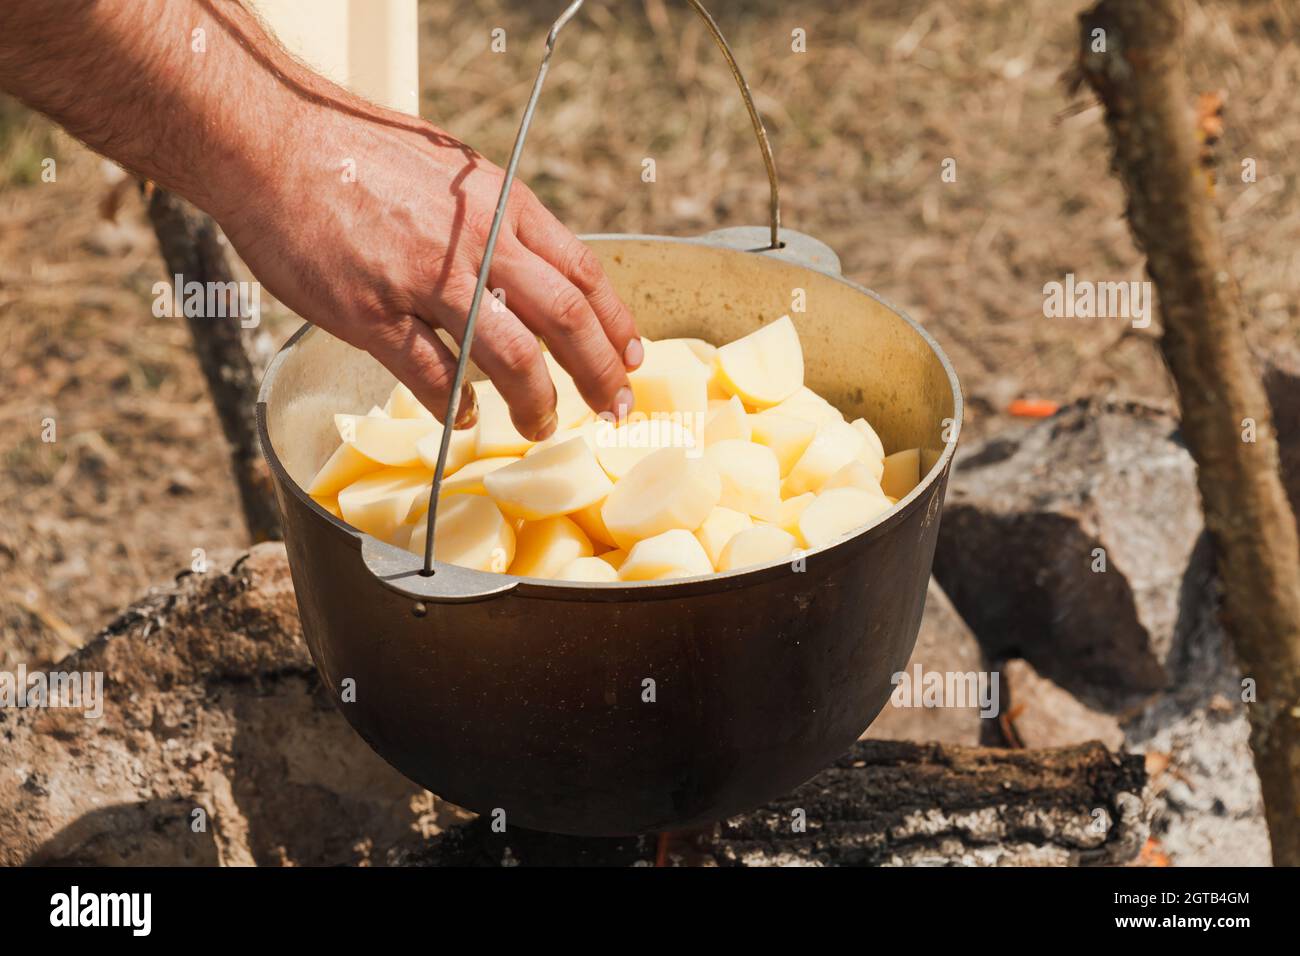 Männliche Hand fügt Kartoffeln in einen Kessel. Vorbereitung einer Suppe am offenen Feuer, Campingmahlzeit Stockfoto